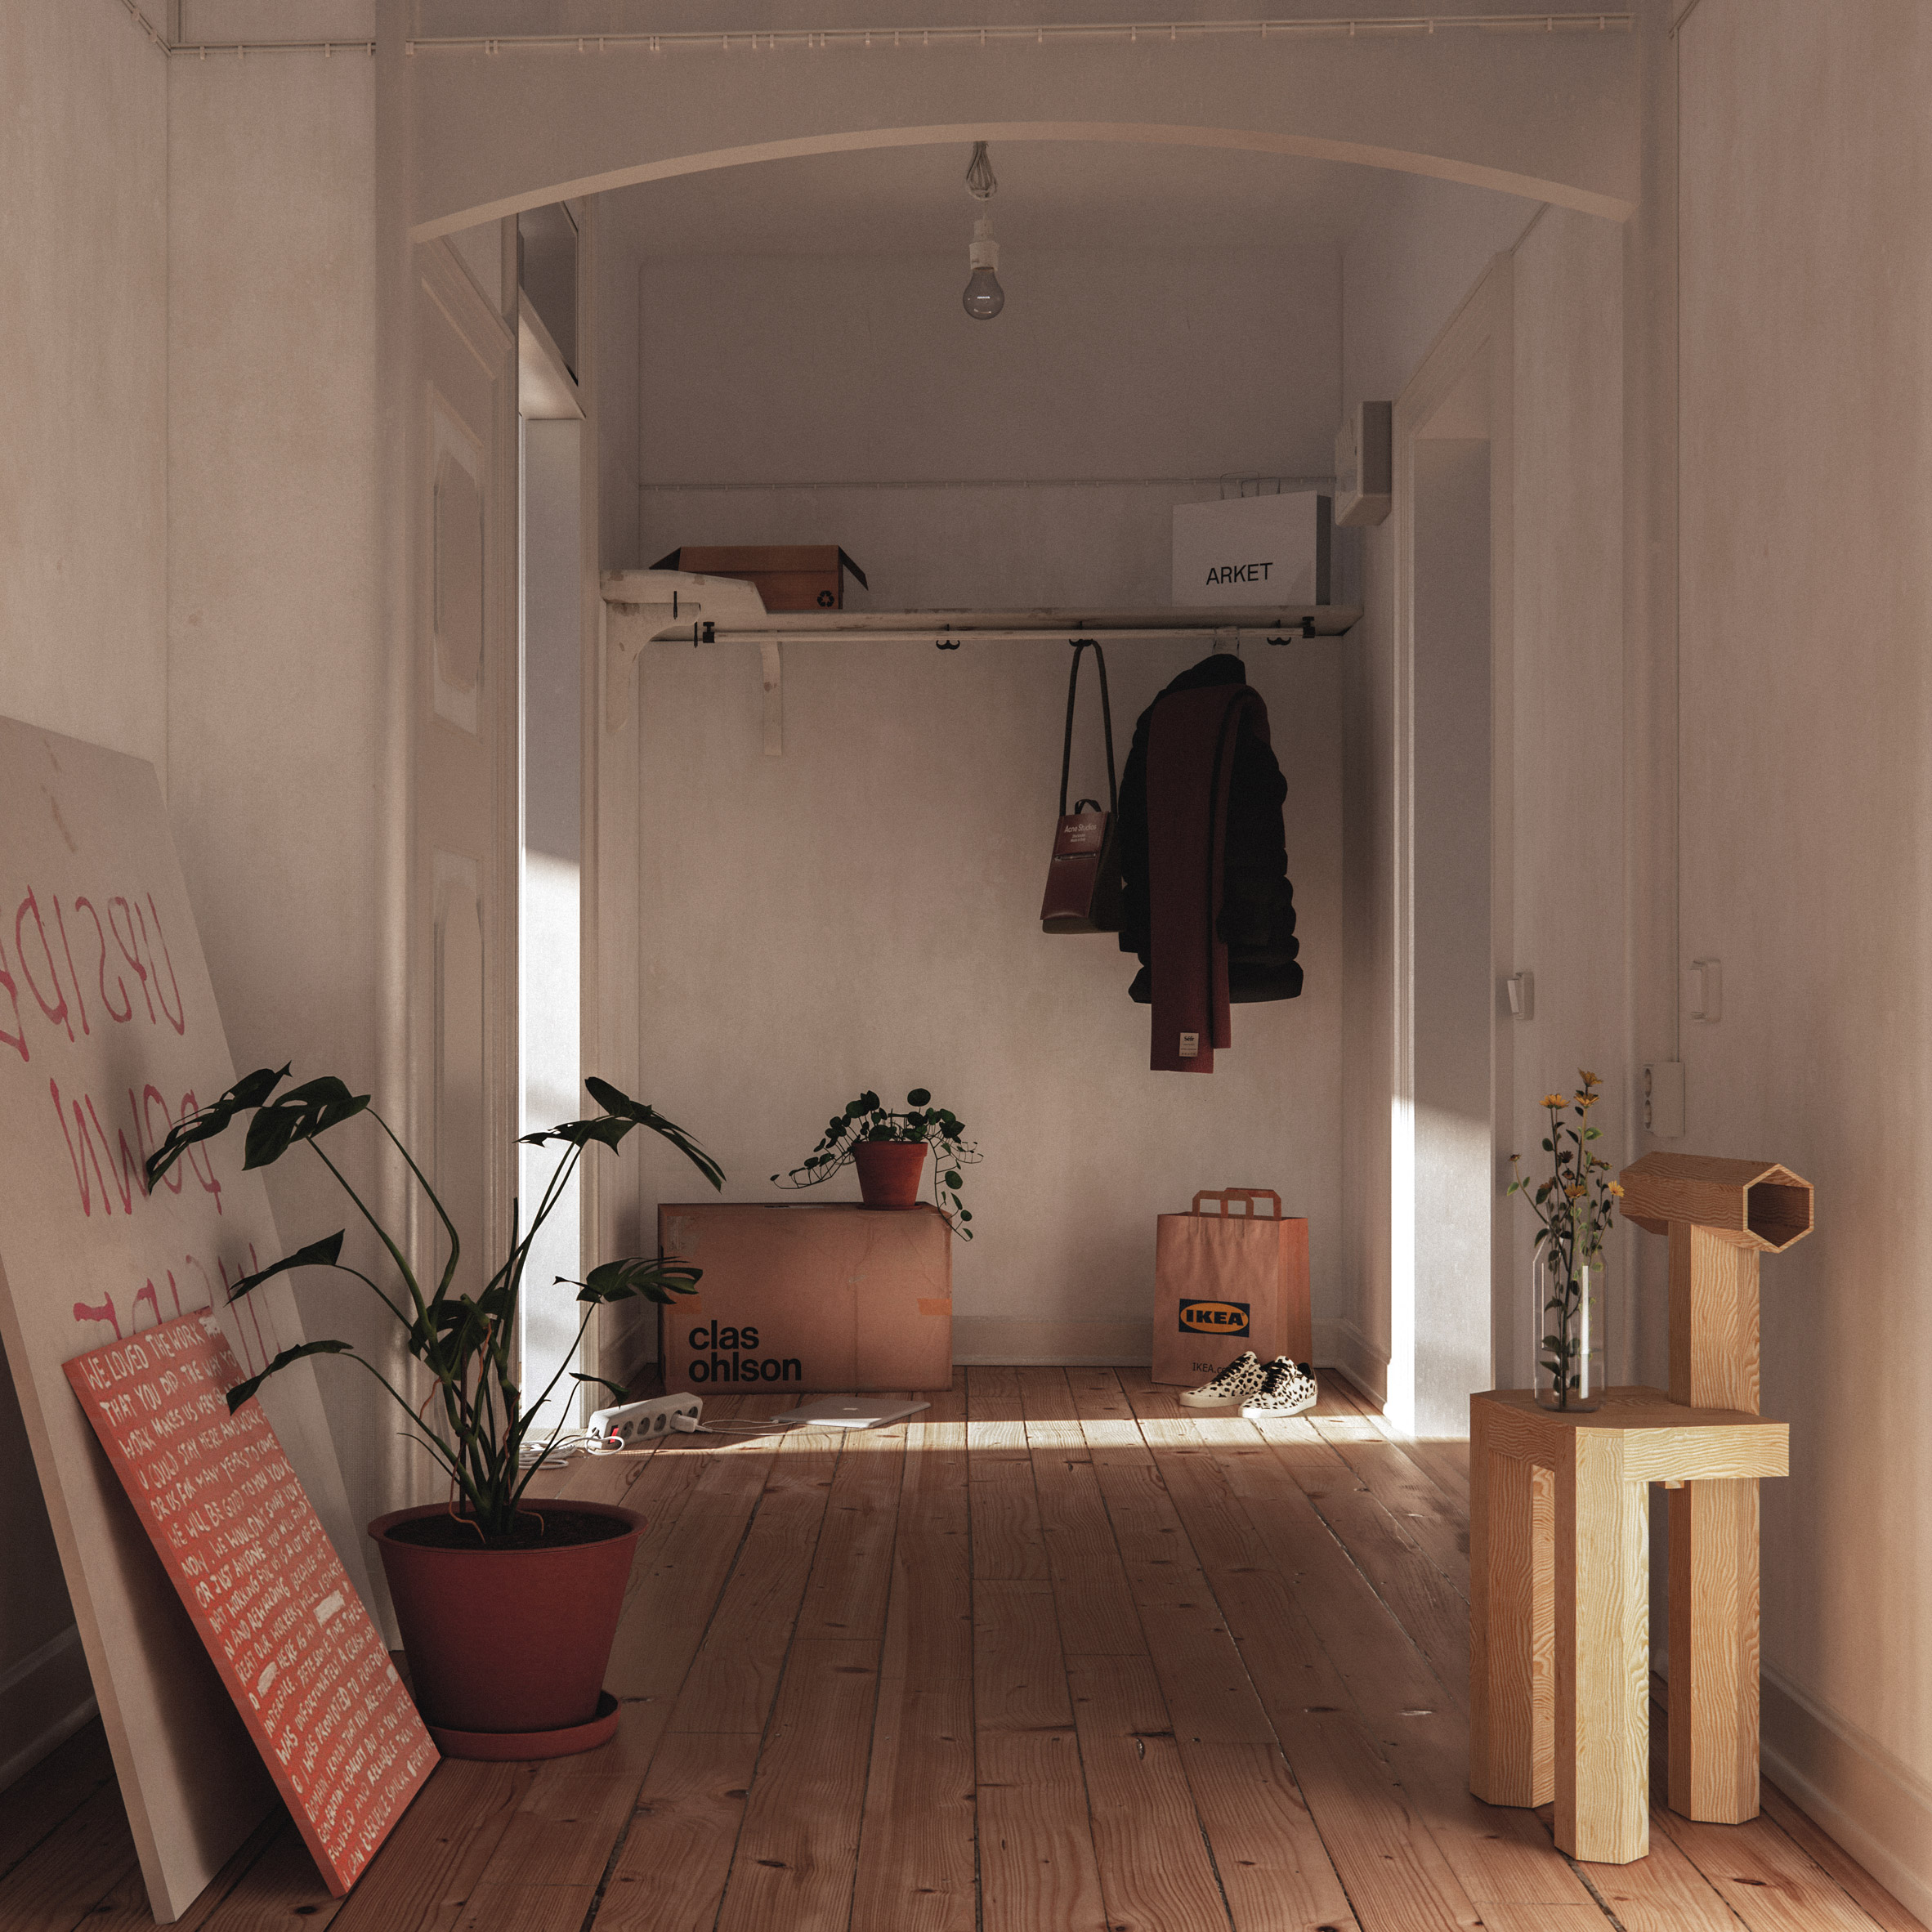 Christoffer Jansson将虚拟公寓冒充Instagram家庭装修项目|ART-Arrakis | 建筑室内设计的创新与灵感